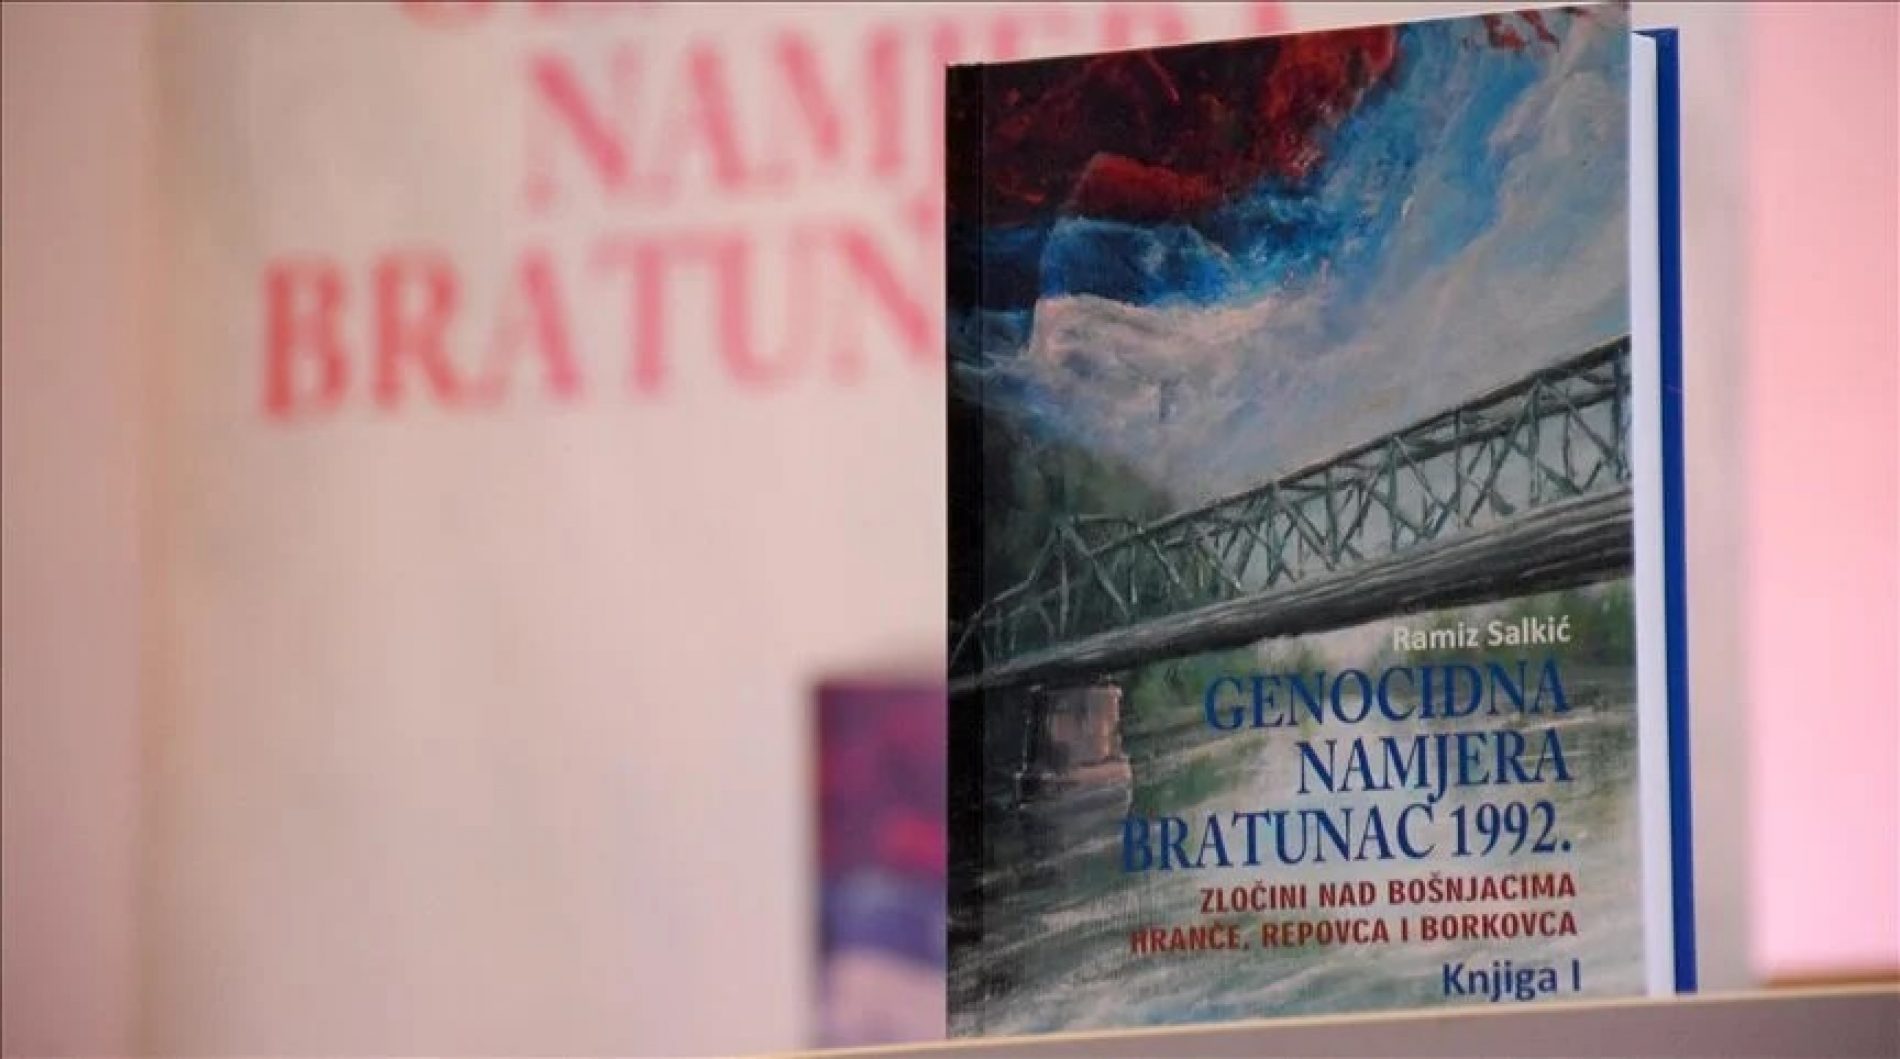 Promocija knjiga iz edicije “Genocidna namjera Bratunac 1992”: Glas preživjelih Bošnjaka i njihov put do slobode